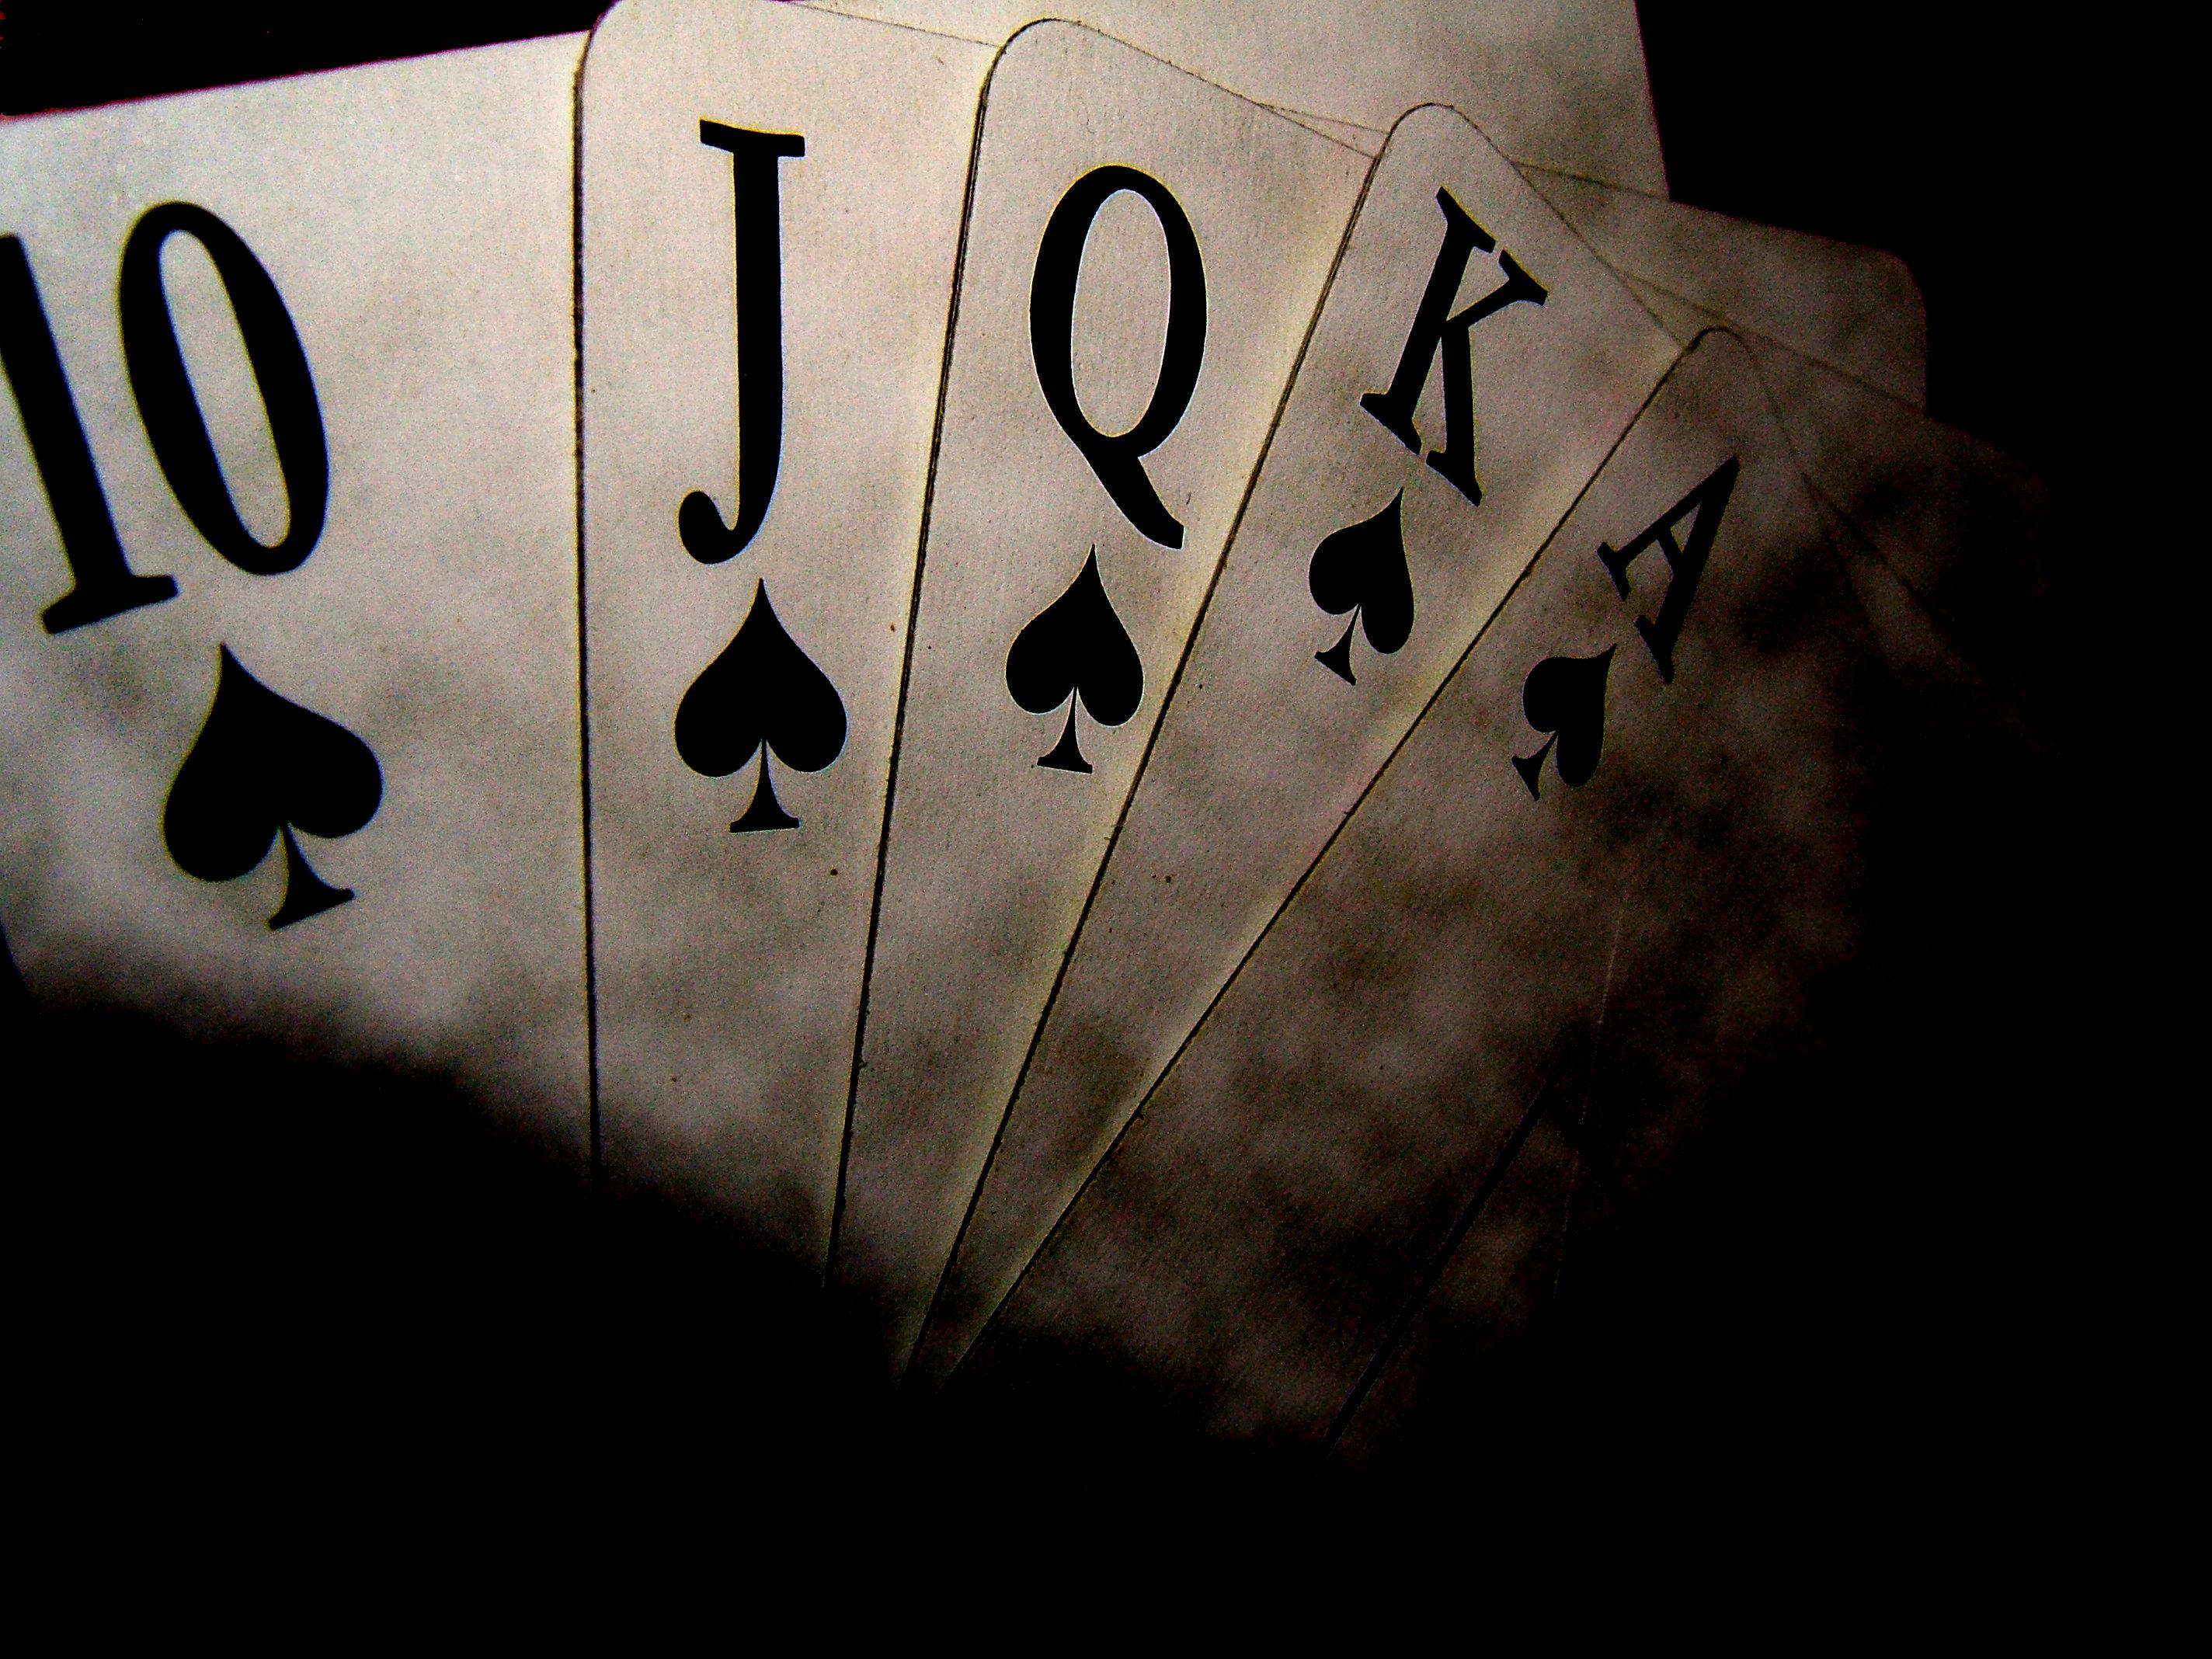 Joker Card Wallpaper Mobile Joker Anime Casino Joker Card Playing